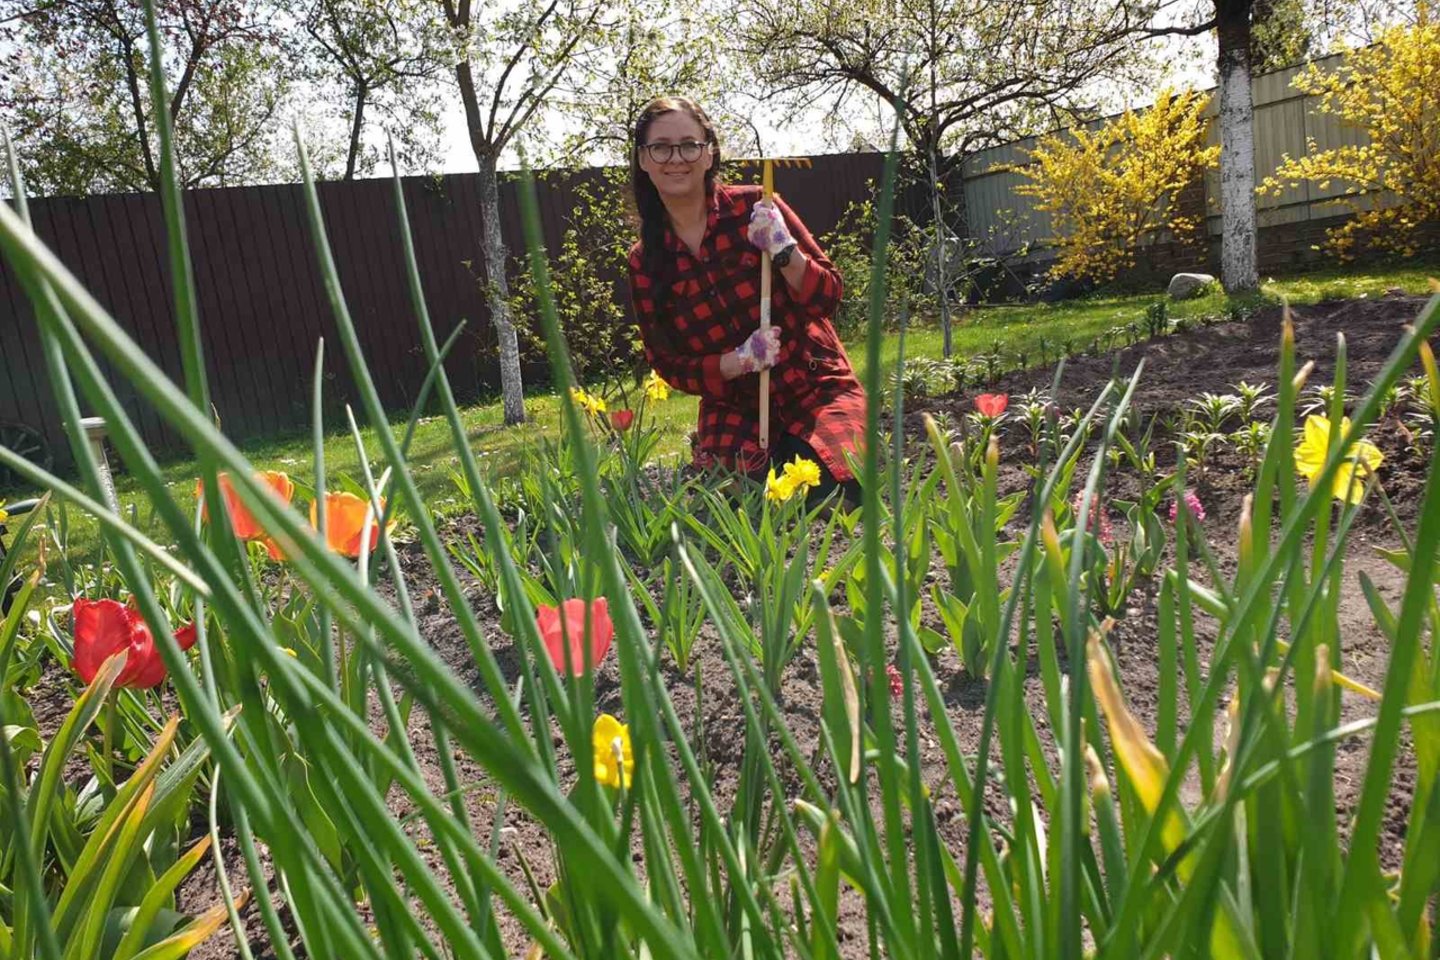  L.Kazlauskienė savo sodu ir daržu rūpinasi nuo ankstyvo pavasario.<br> Nuotr. iš asmeninio albumo